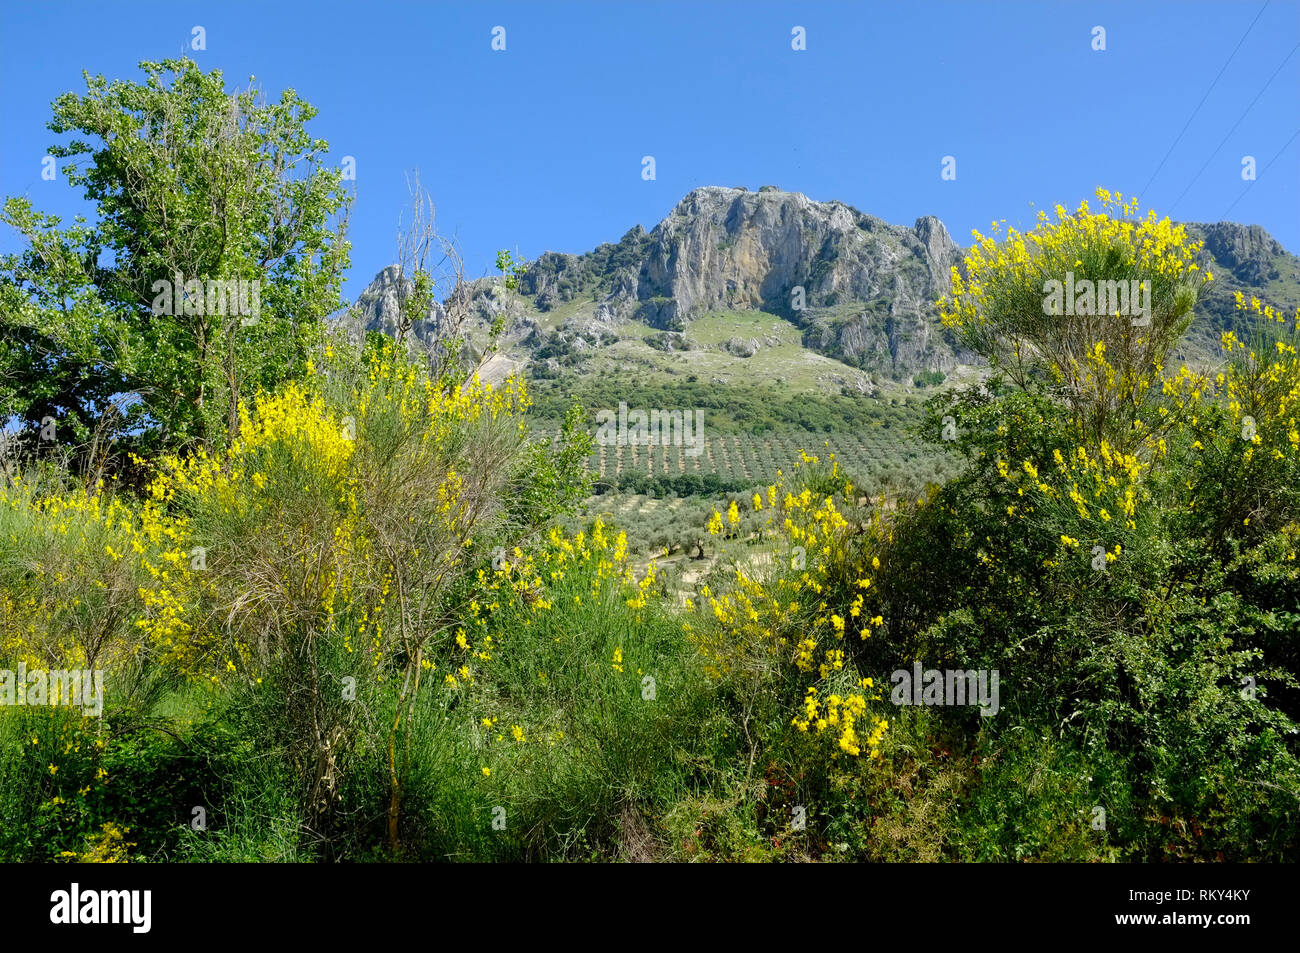 Primavera con flores amarillas de escoba, las montañas y los olivares de la Sierra Subbetica, un parque natural en la provincia de Córdoba, Andalucía, España. Foto de stock